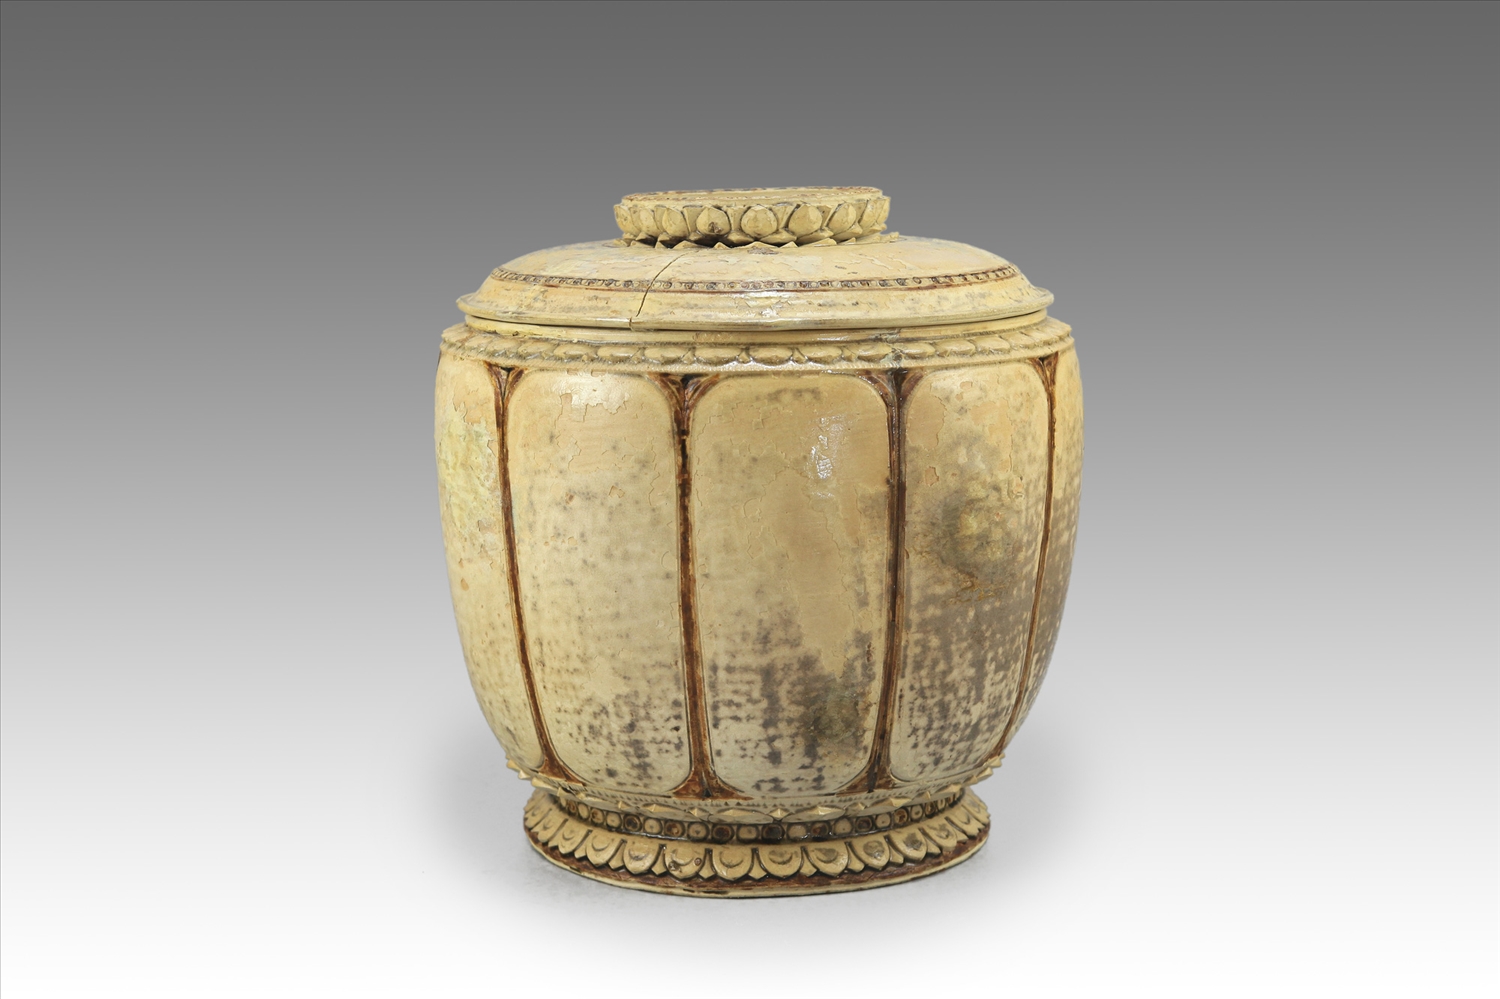 Chất liệu gốm hoa nâu, niên đại Thế kỷ XIII-XIV